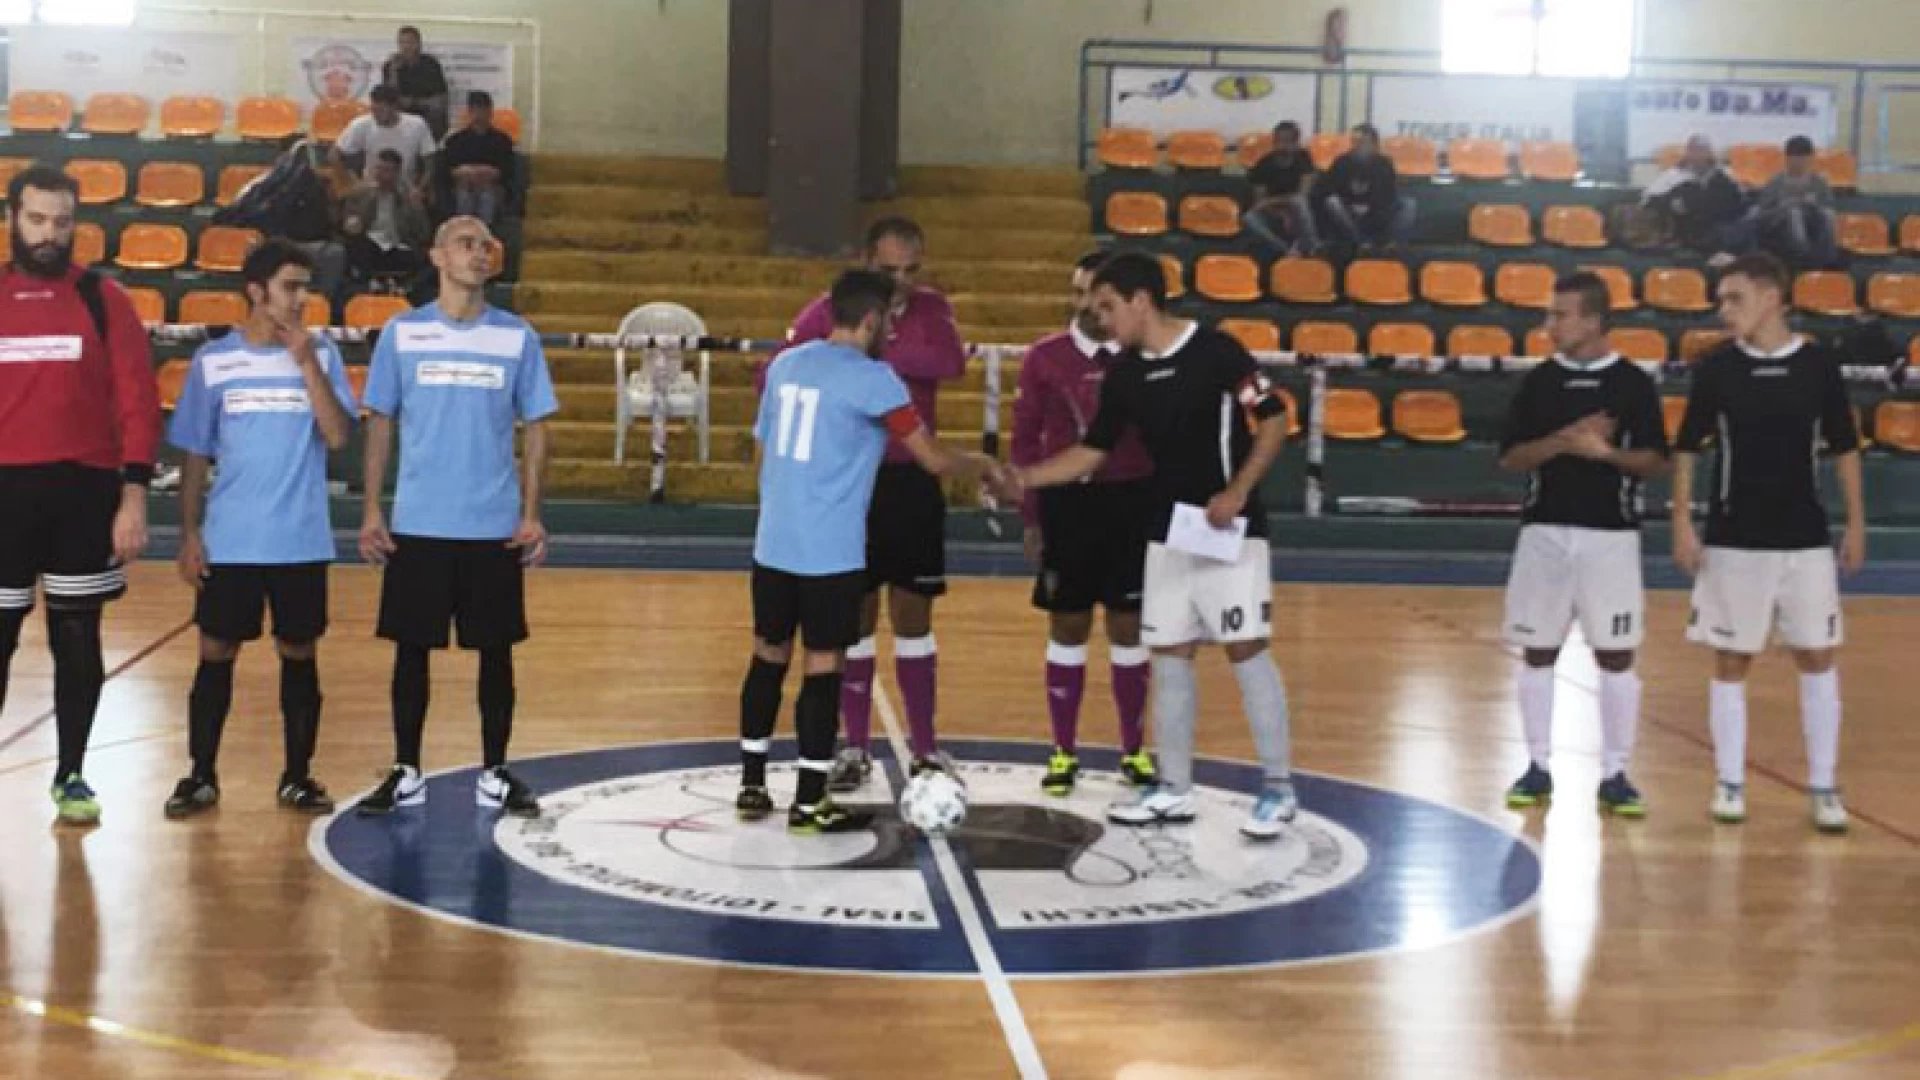 Calcio a 5: la Faga Gioielli vola. Schiantato il Bunker Termoli e secondo posto in classifica conquistato. Sconfitta di misura per la Futsal Acquaviva.